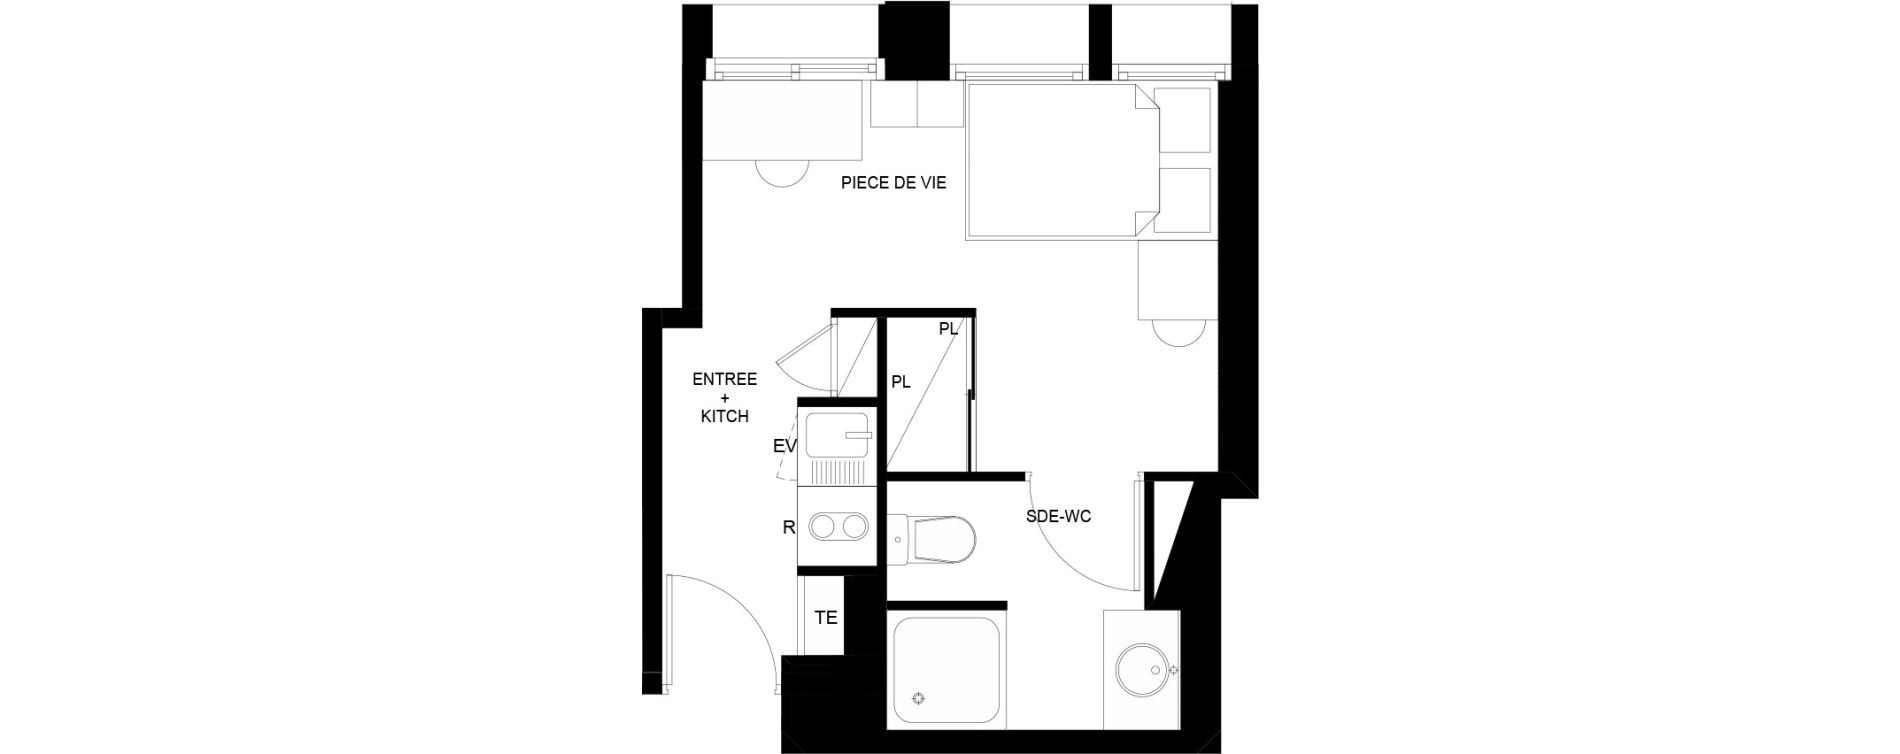 Appartement T1 meubl&eacute; de 17,40 m2 au Mans Nationale